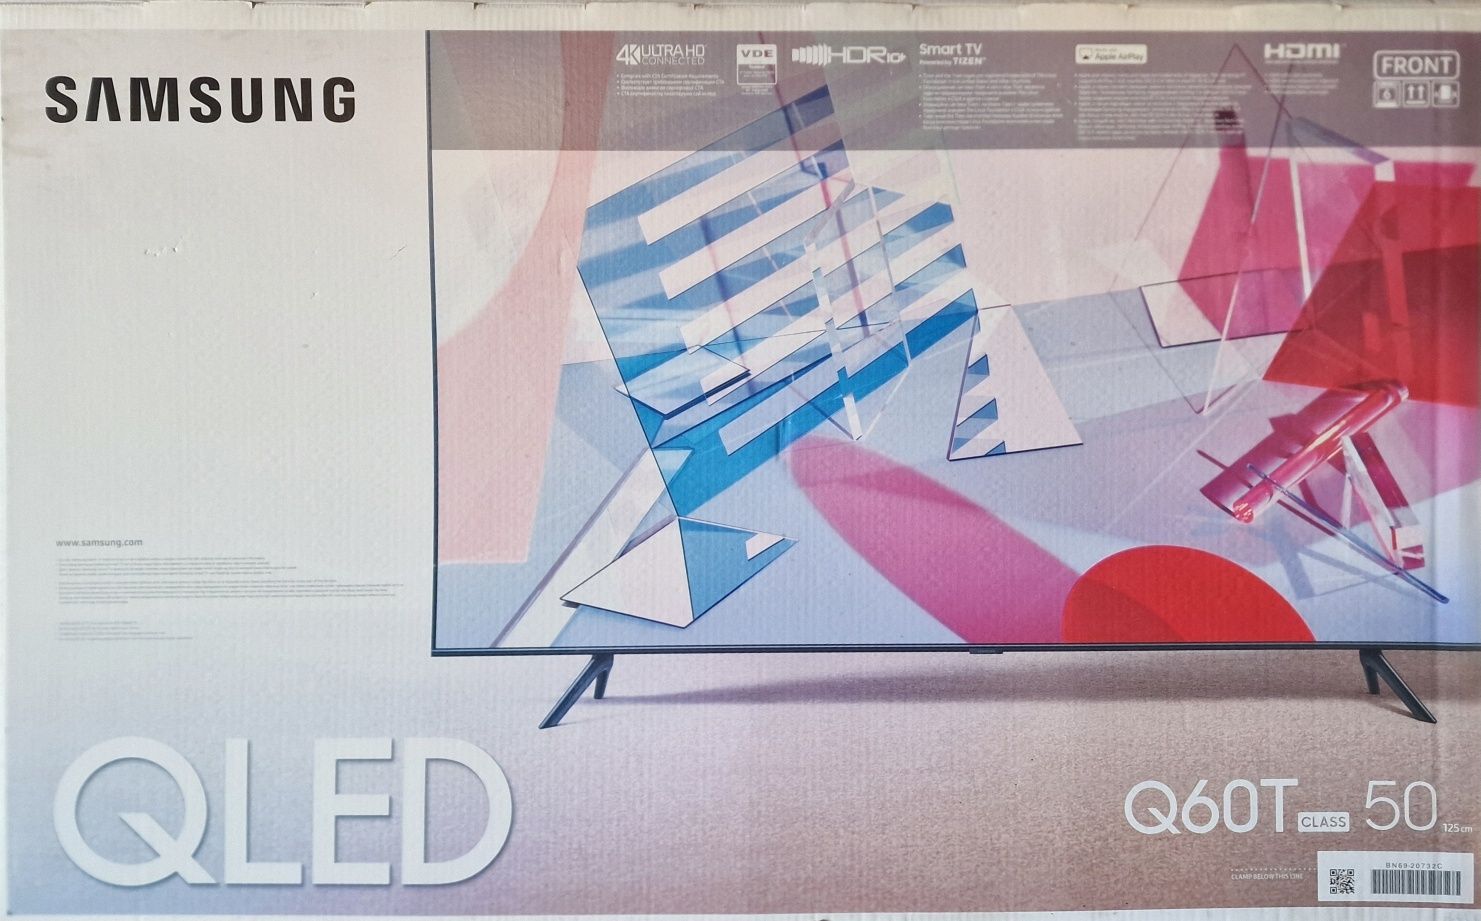 Телевизор Samsung QLED  60T  50"